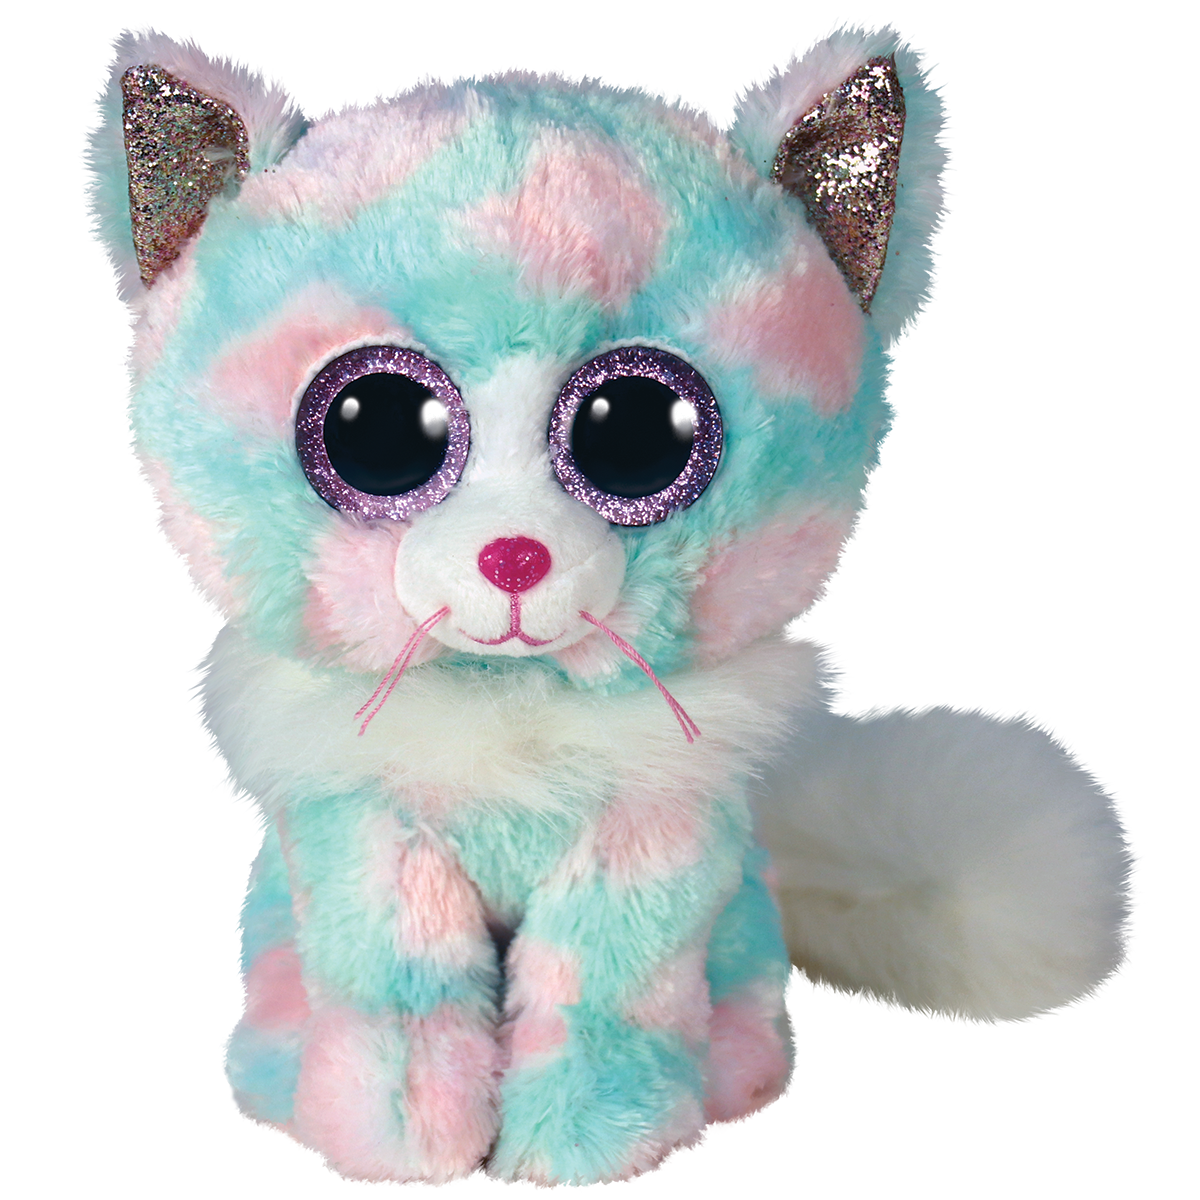 Ty - peluche - beanie boos - gatto - opal - azzurro, bianco e rosa - gattino con occhioni e orecchie glitter viola - il morbido pupazzo con gli occhi grandi scintillanti - 28 cm - 37288 - TY